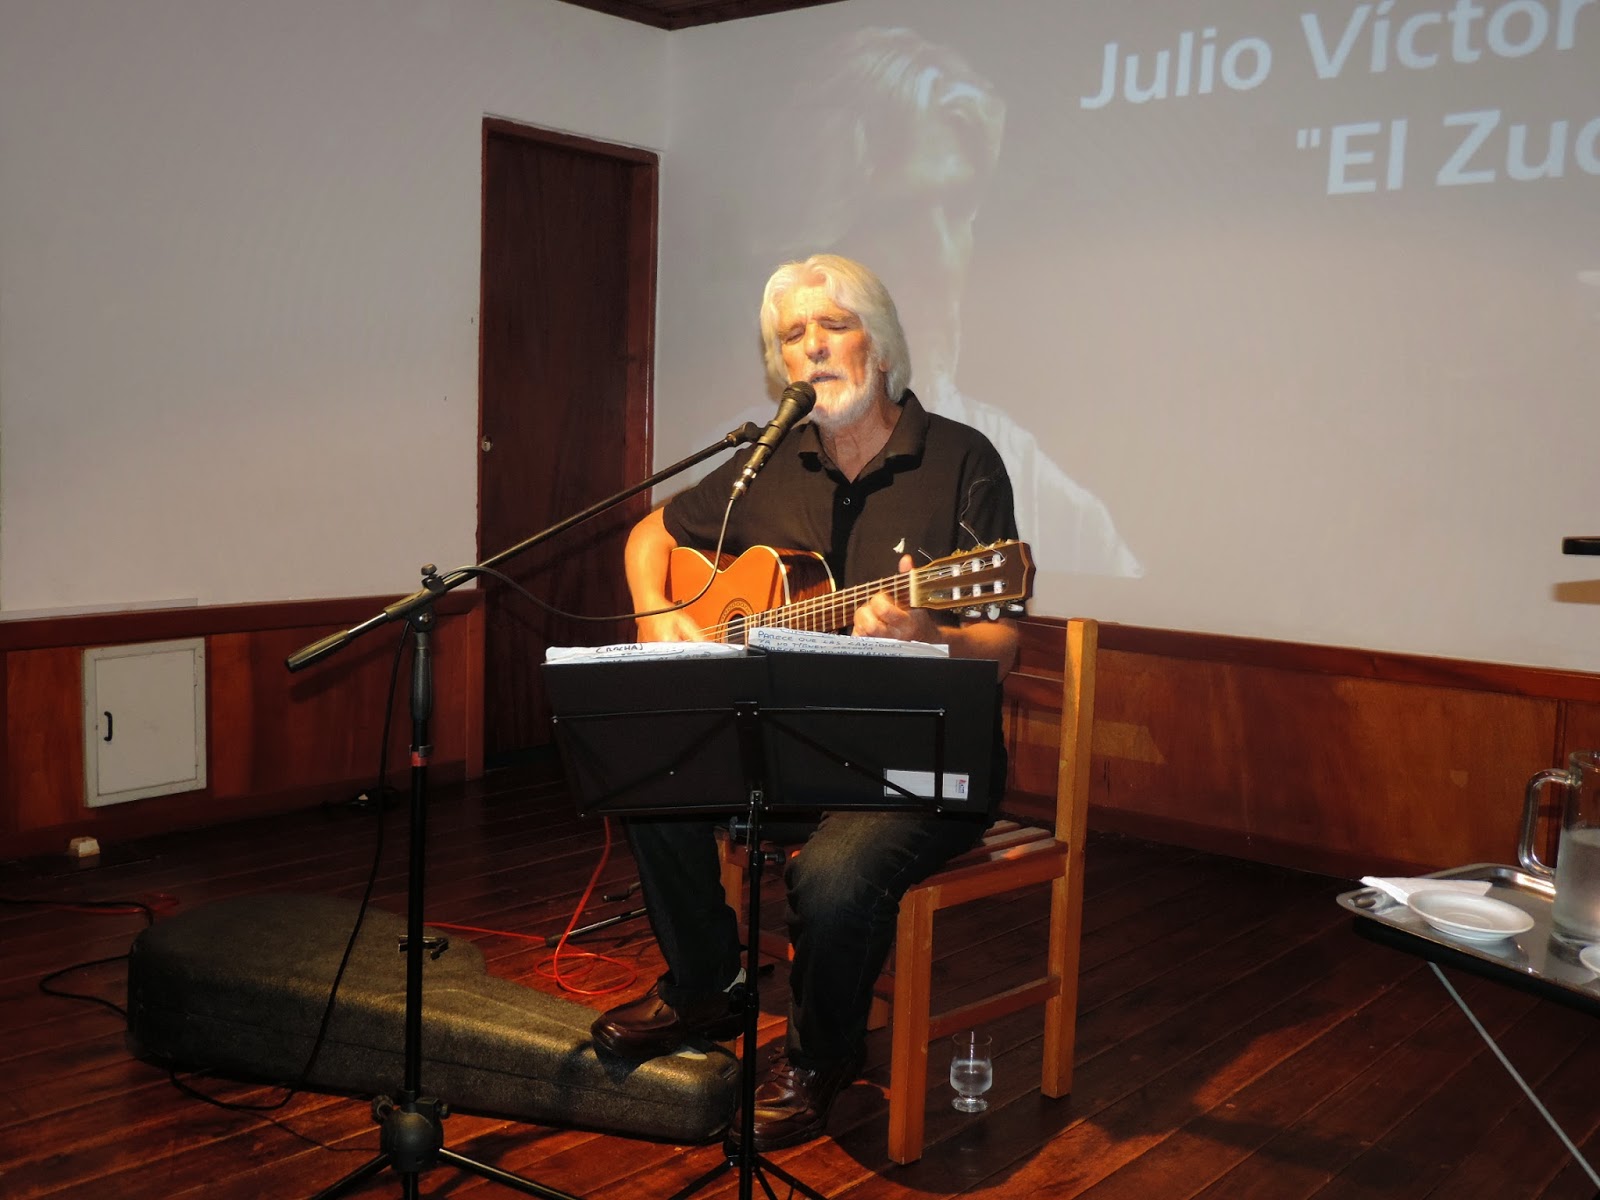 Julio Victor González